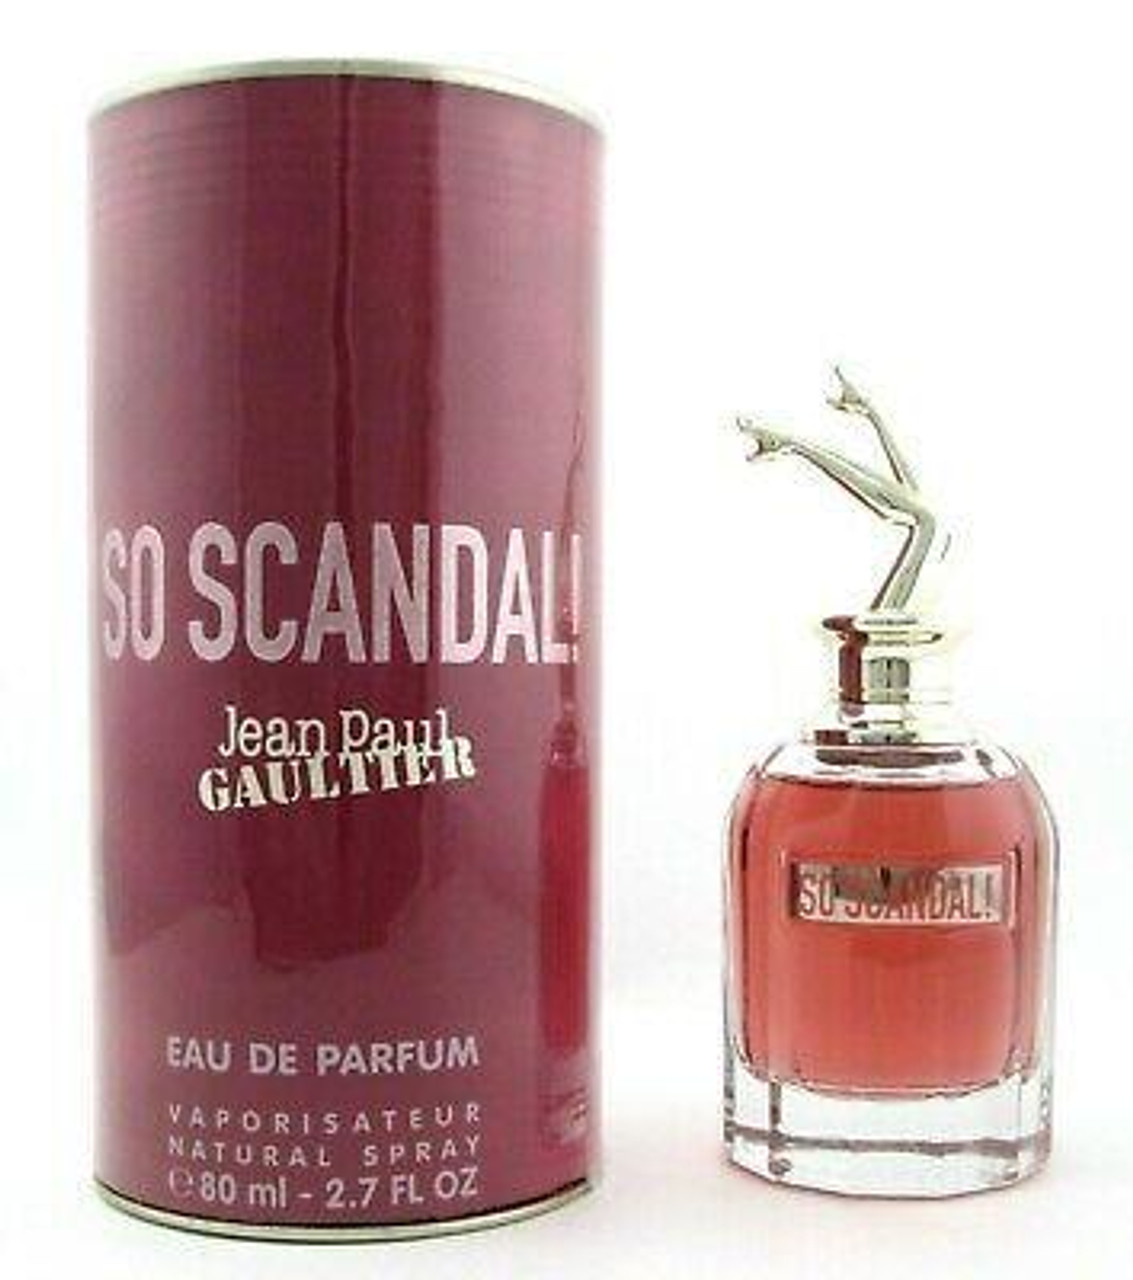 So Scandal! By Jean Paul Gaultier Eau De Parfum 1.7oz